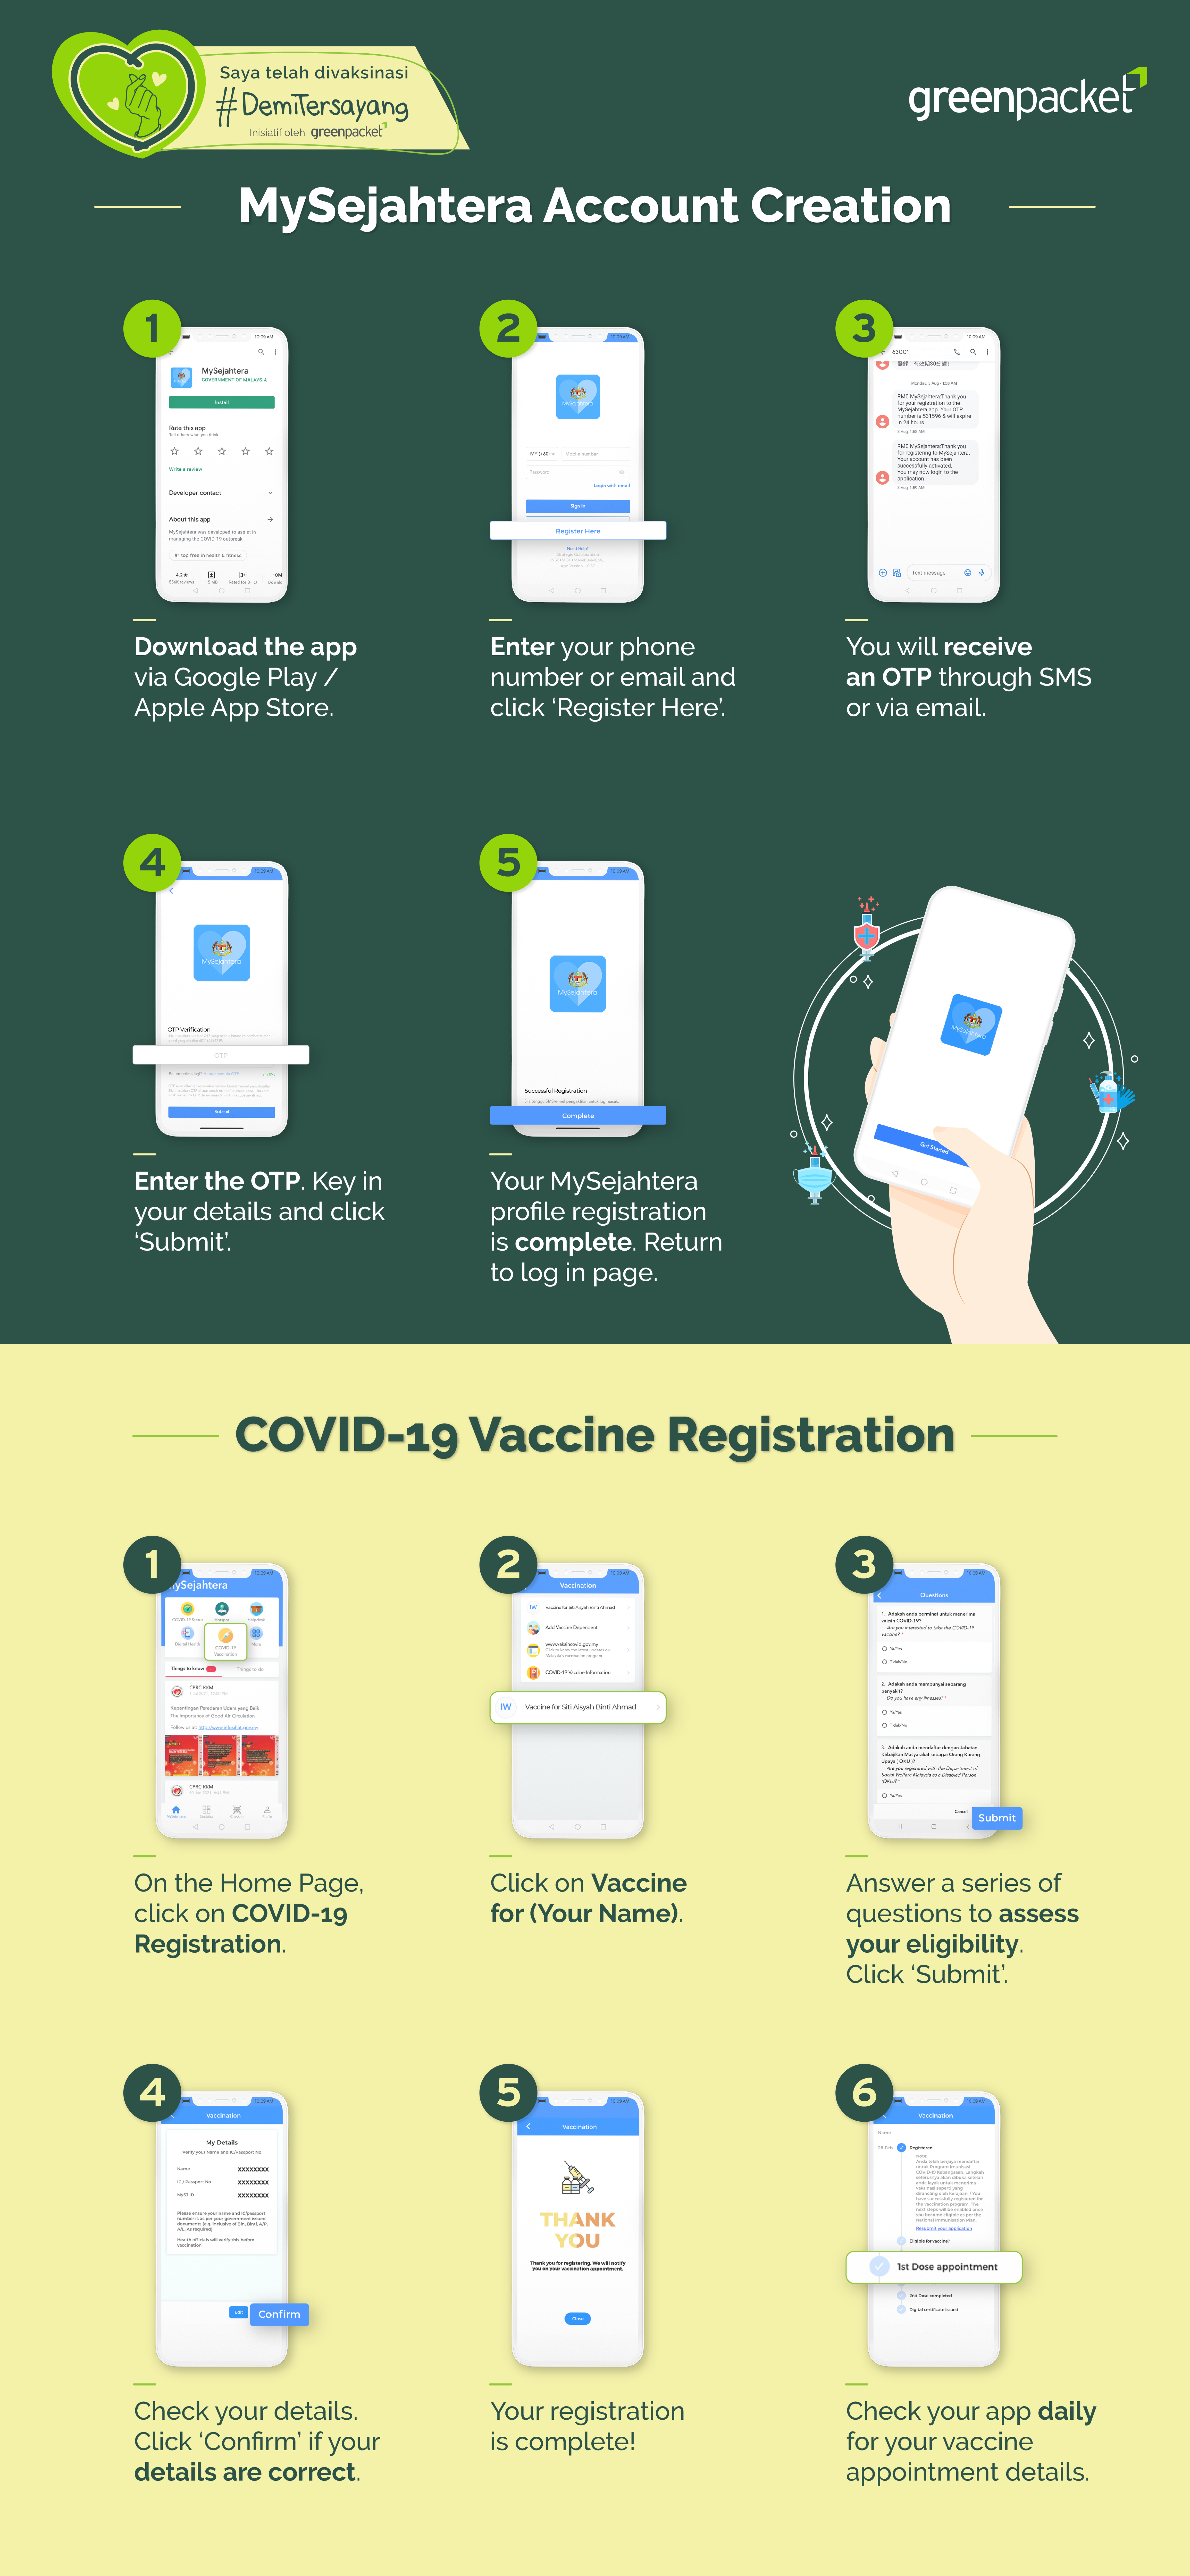 绿驰通讯制作登记接种疫苗的步骤信息图，以方便民众能顺利登记接种疫苗。-绿驰通讯提供-